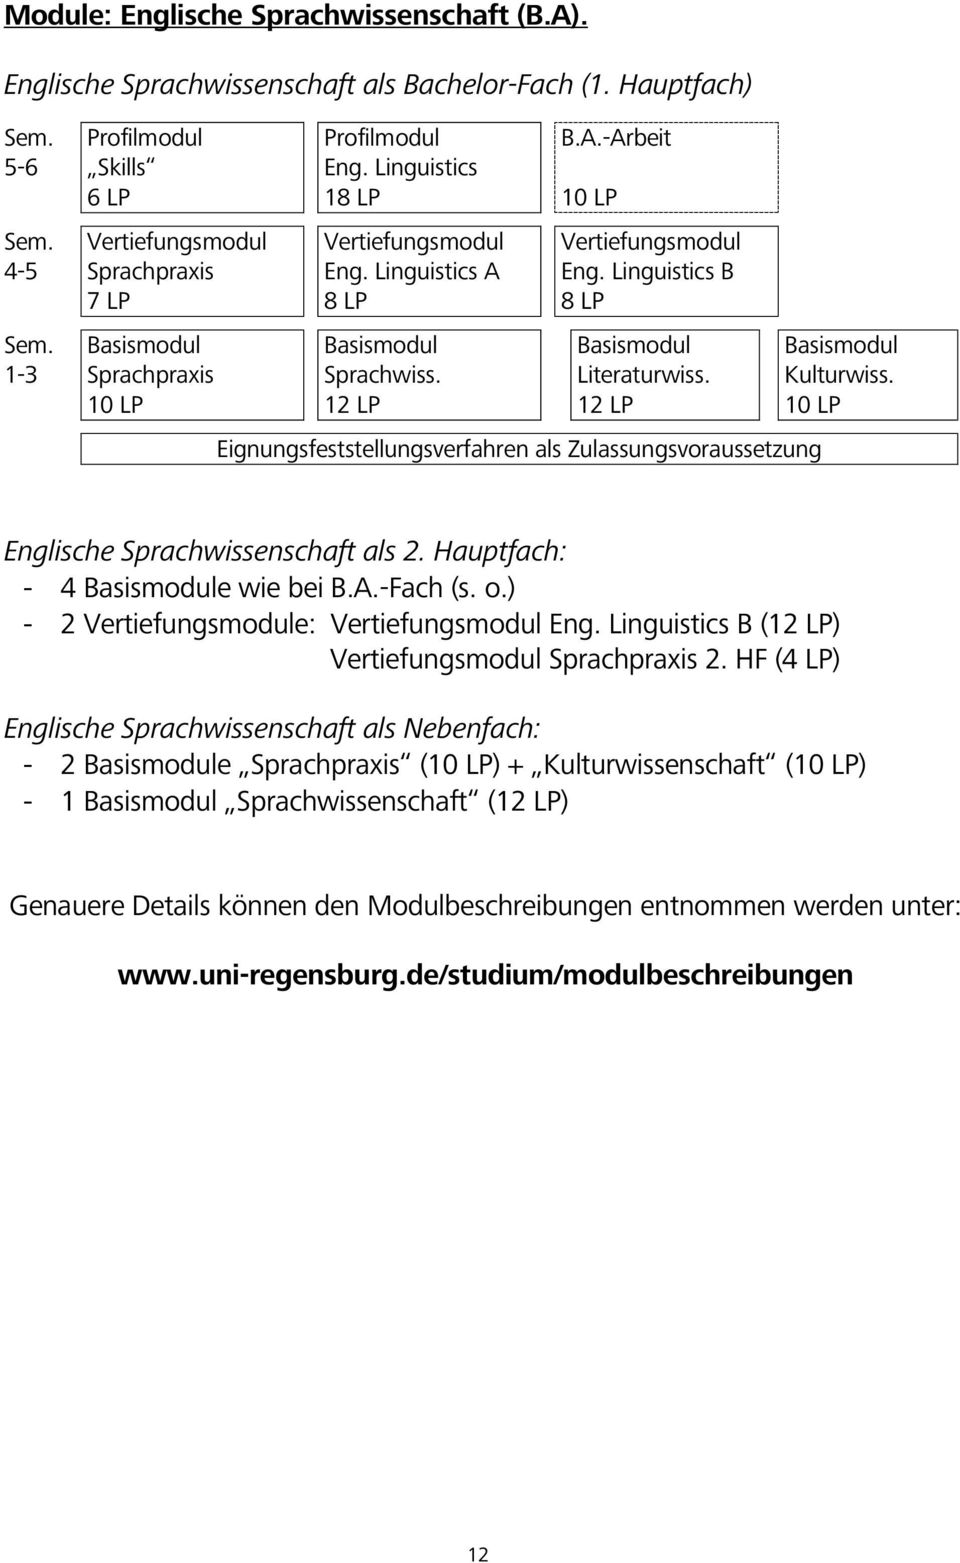 Linguistics B 8 LP Literaturwiss. 12 LP Eignungsfeststellungsverfahren als Zulassungsvoraussetzung Kulturwiss. 10 LP Englische Sprachwissenschaft als 2. Hauptfach: - 4 e wie bei B.A.-Fach (s. o.